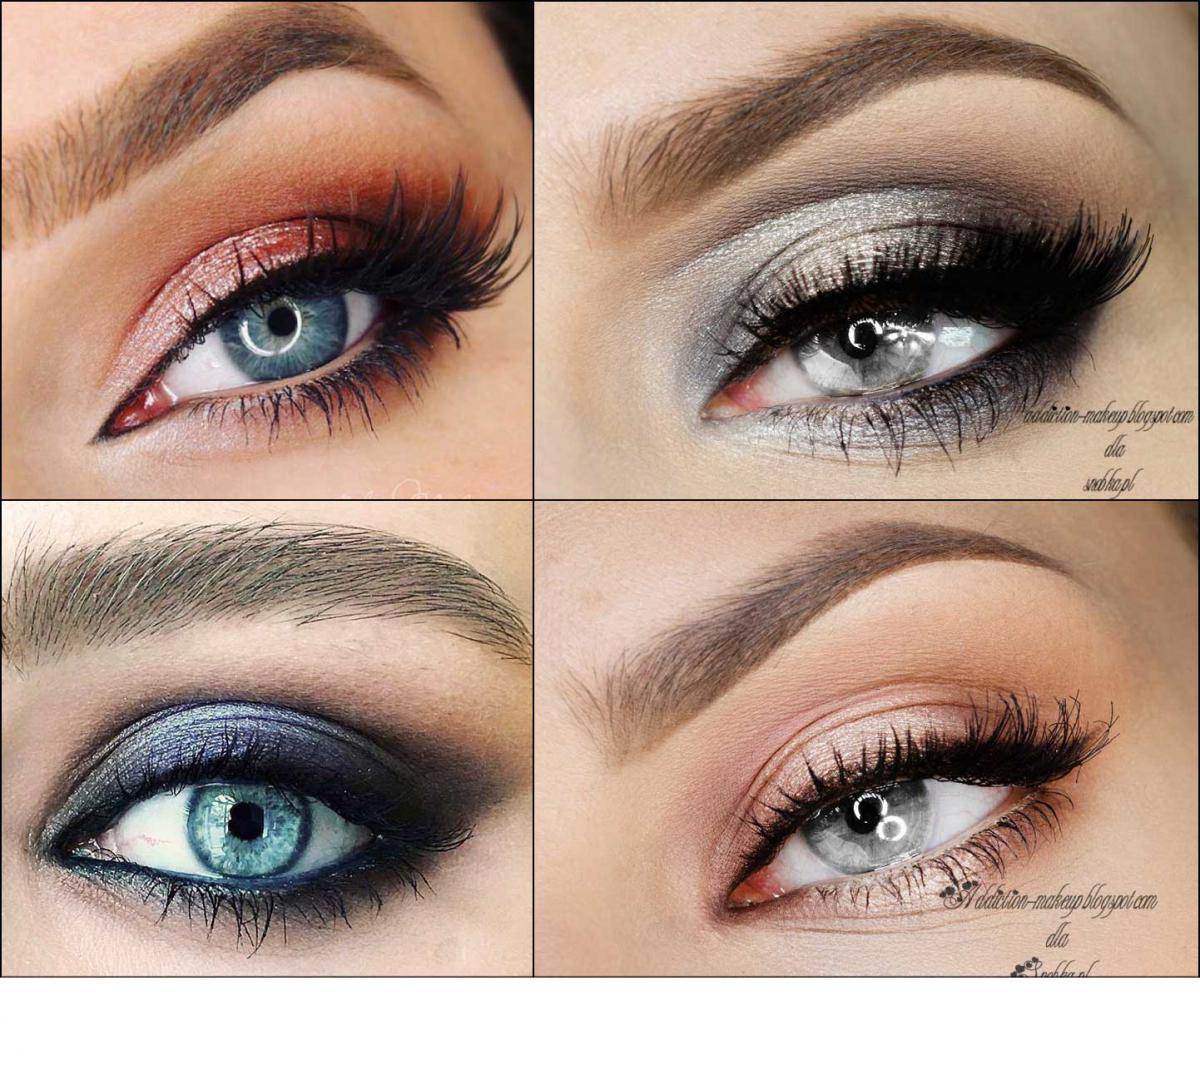 Тени для серых глаз - дневной и вечерний макияж | портал для женщин womanchoice.net